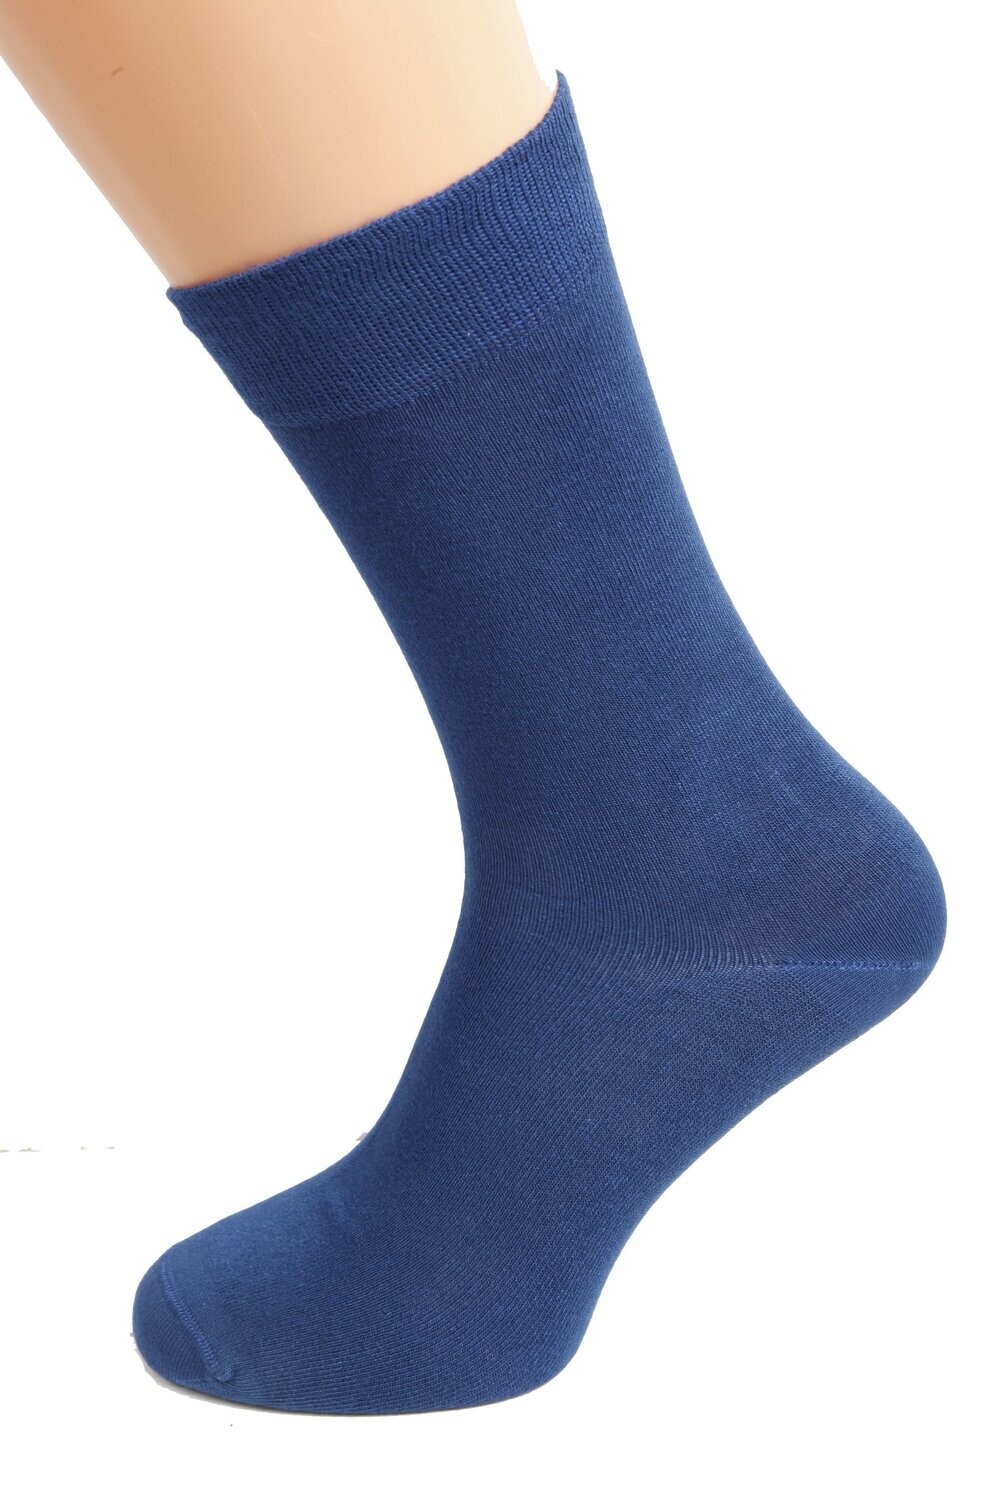 TAUNO men's dark blue socks